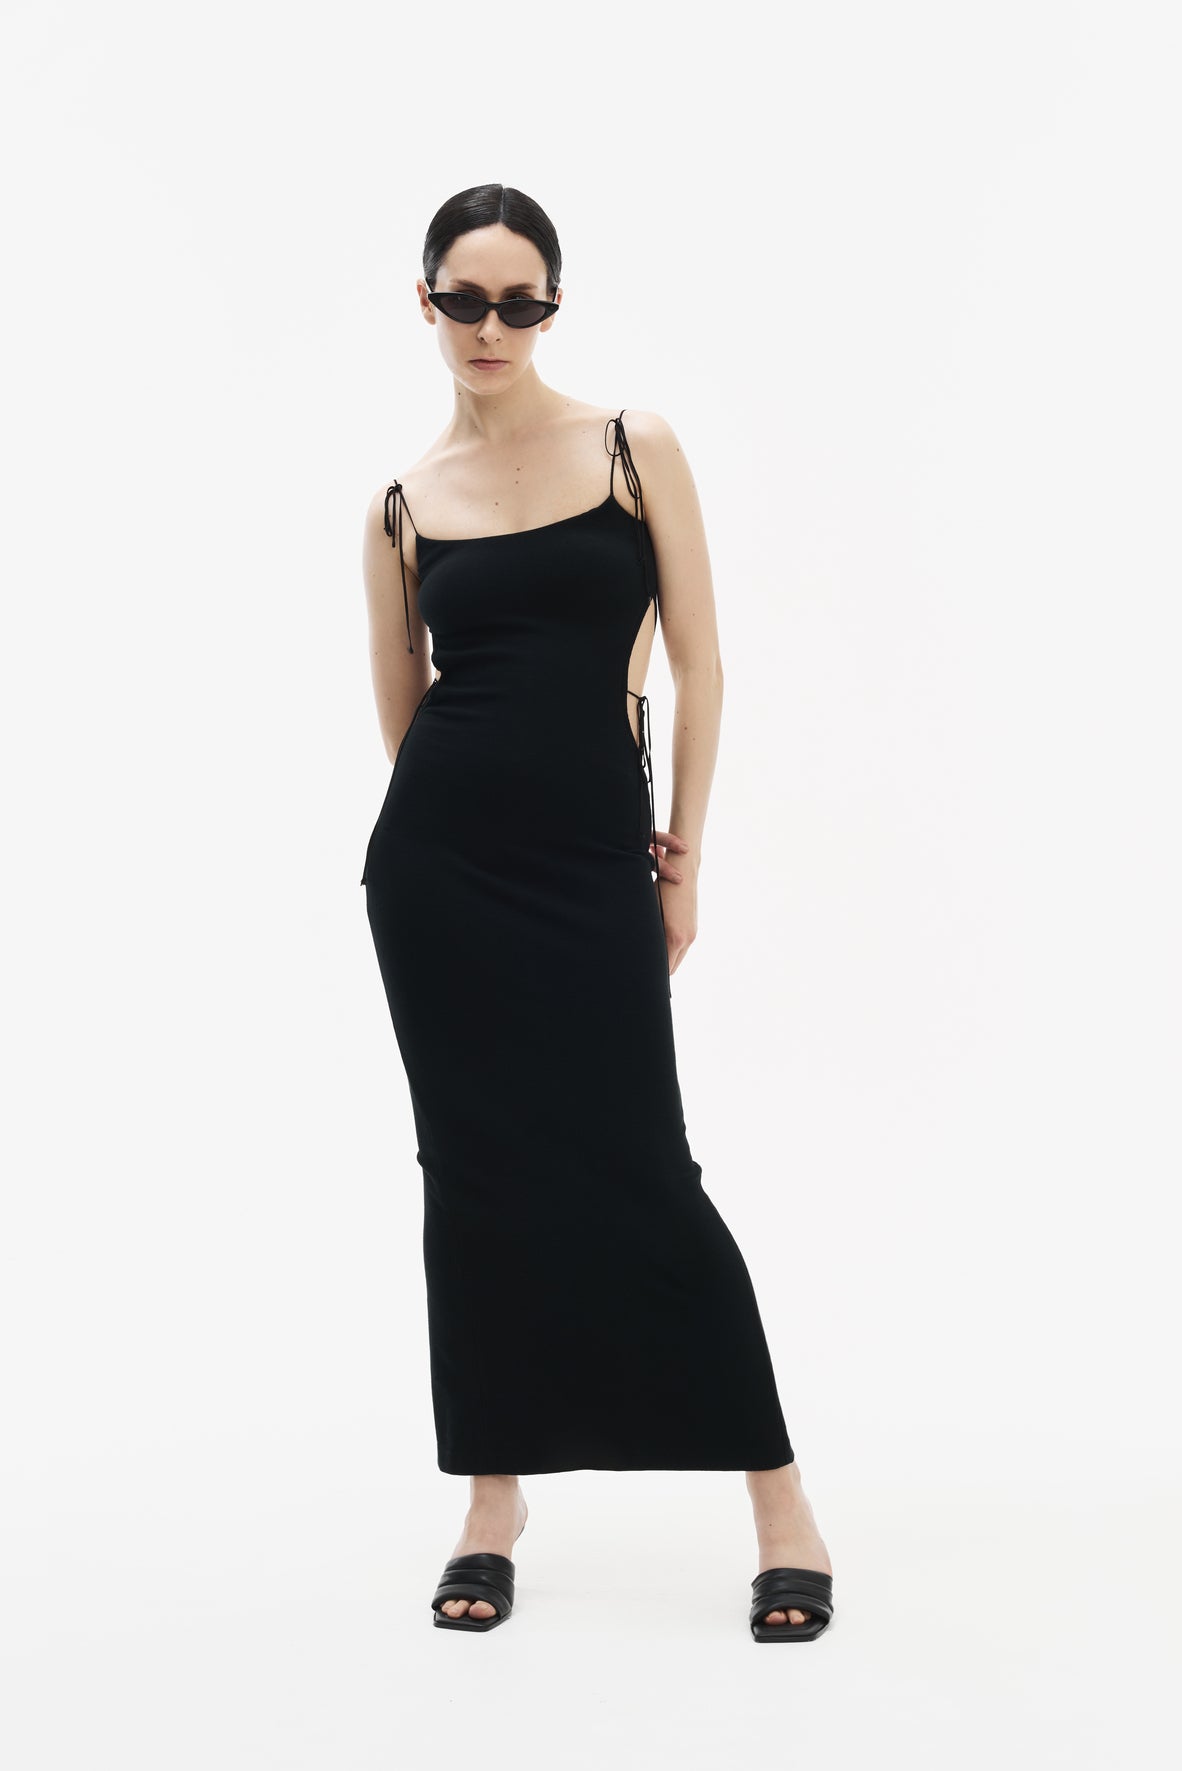 SHUN strap long dress black ストラップロングドレス